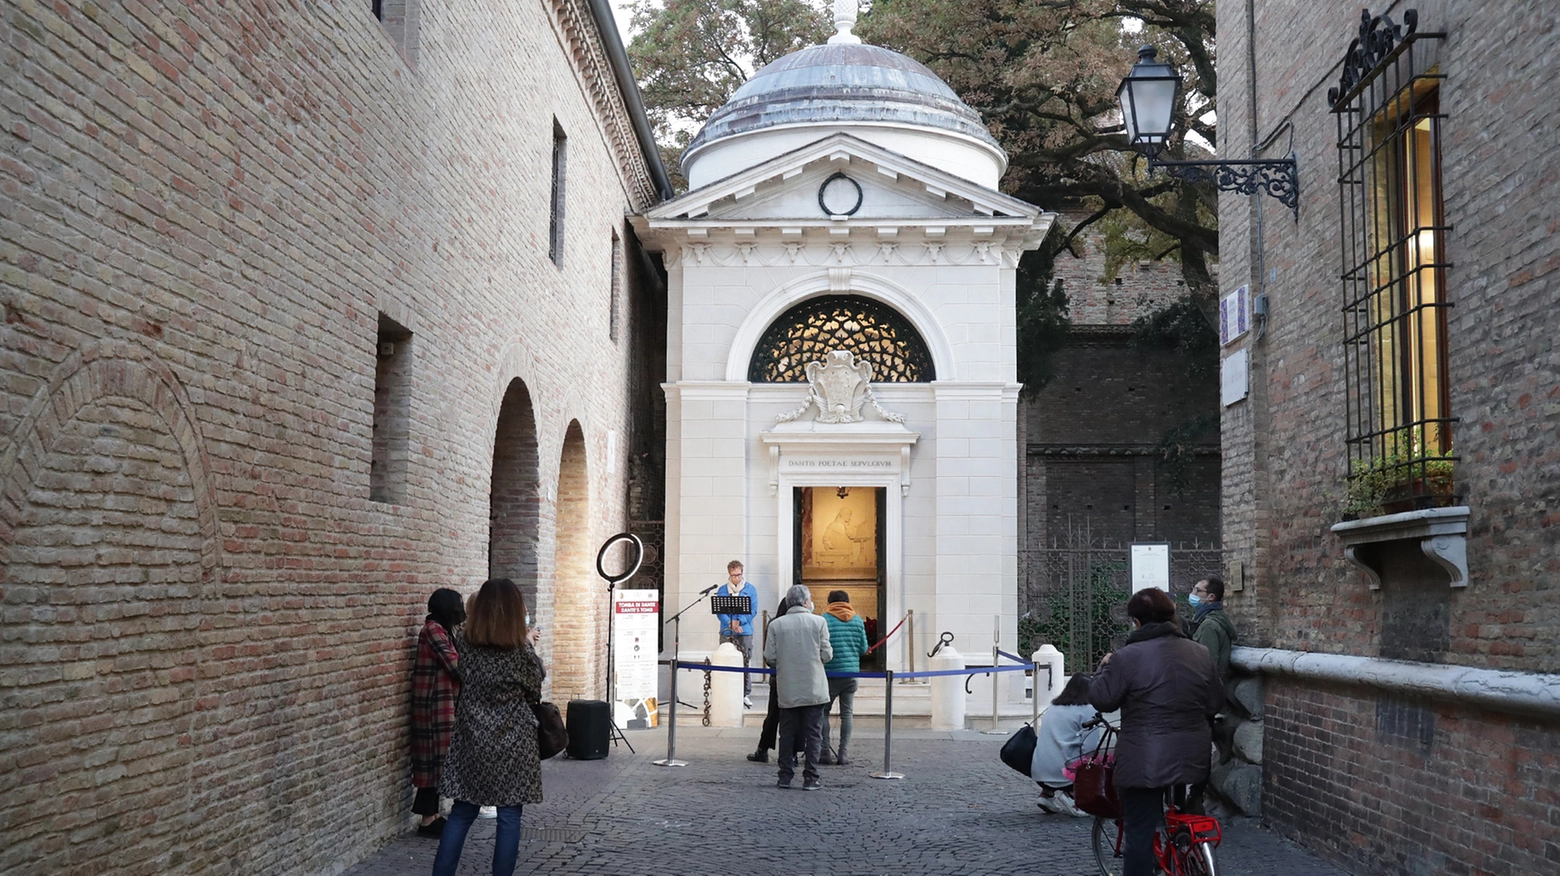 La tomba di Dante, a Ravenna, citata dalla trasmissione tv 'Paese che vai' (Zani)